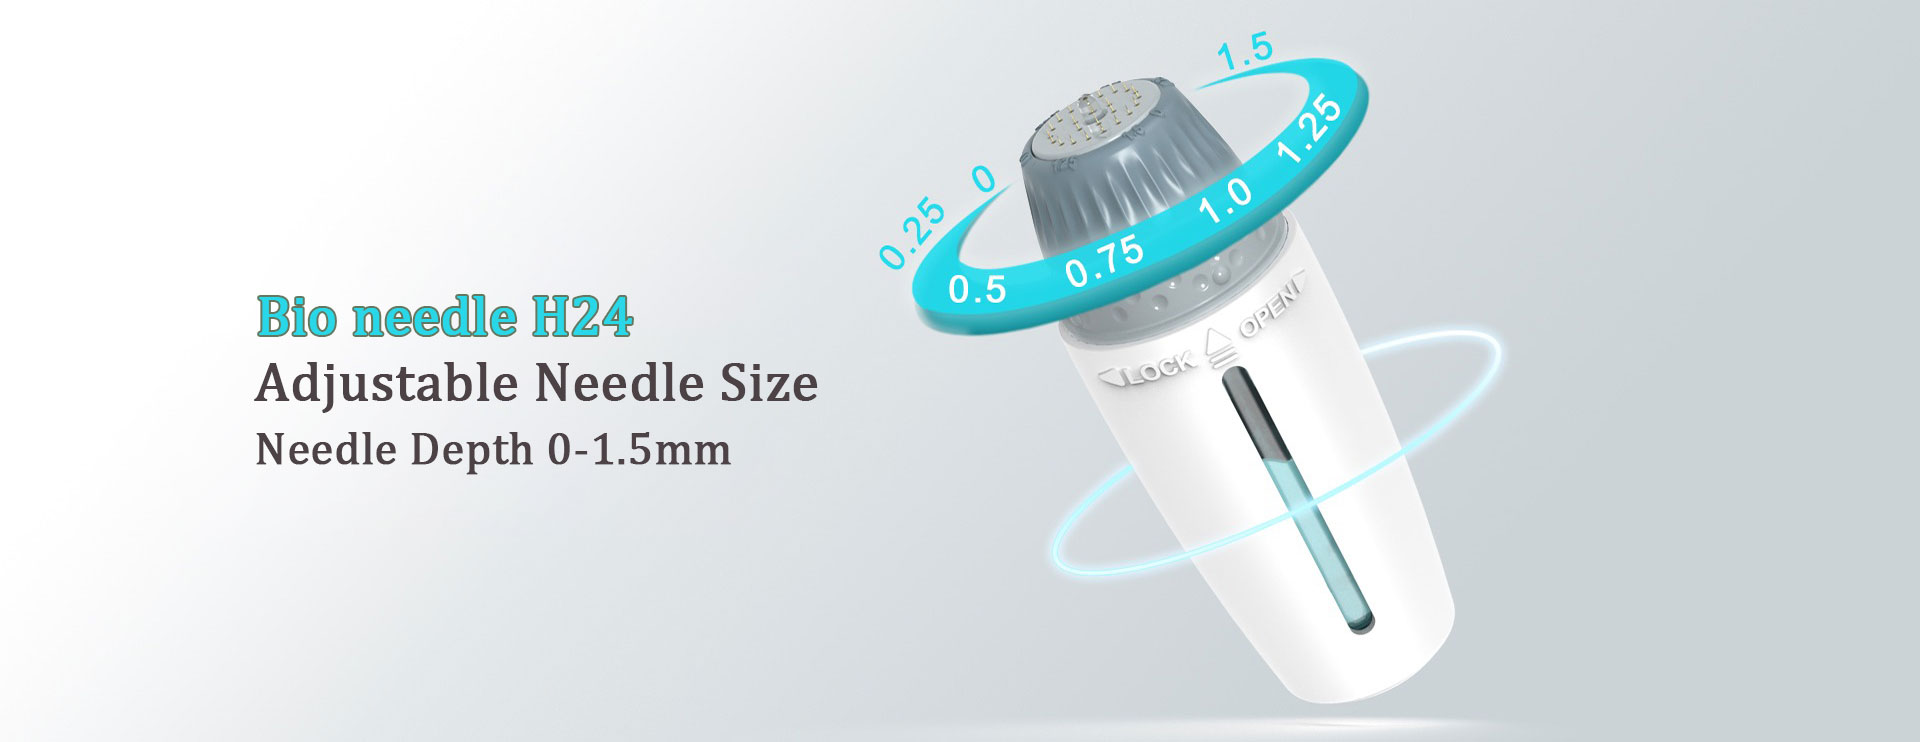 bio needle H24